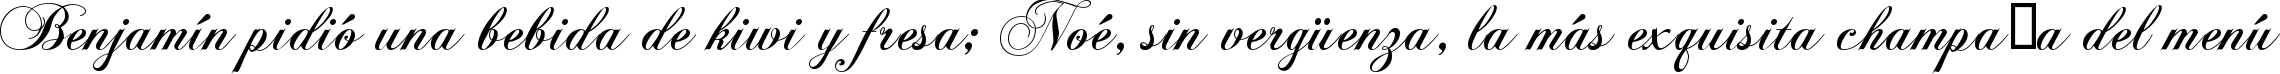 Пример написания шрифтом KB ChopinScript текста на испанском